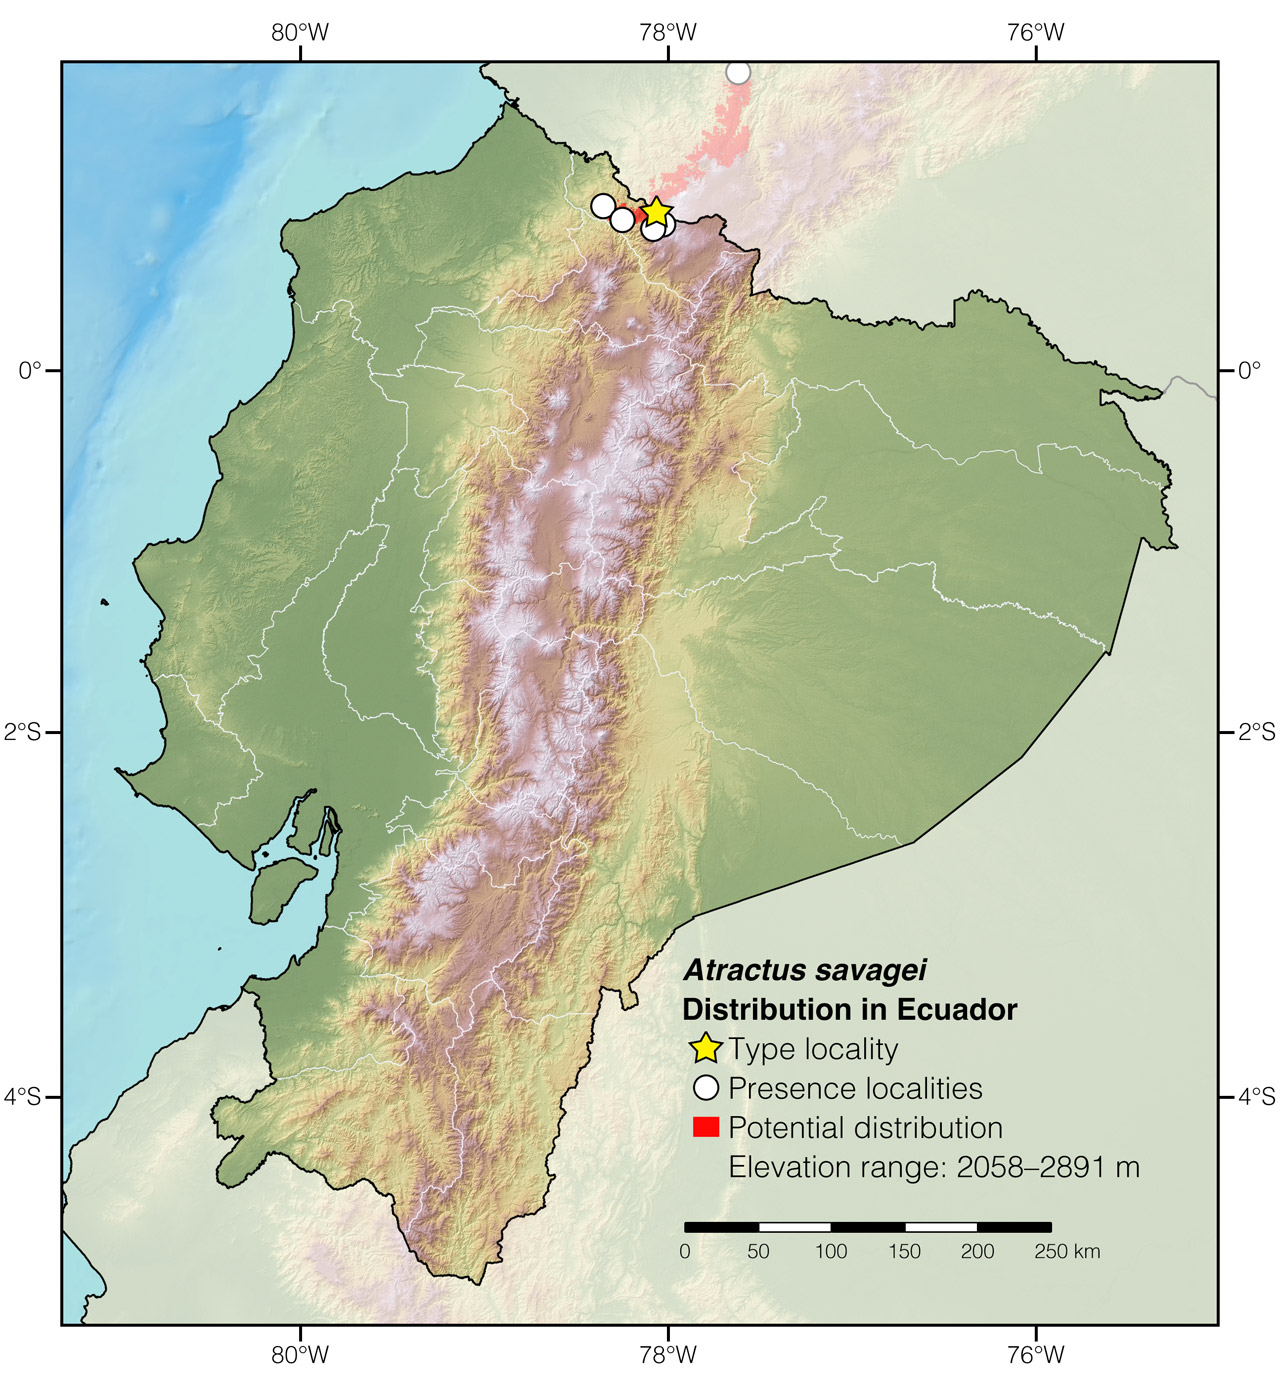 Distribution of Atractus savagei in Ecuador